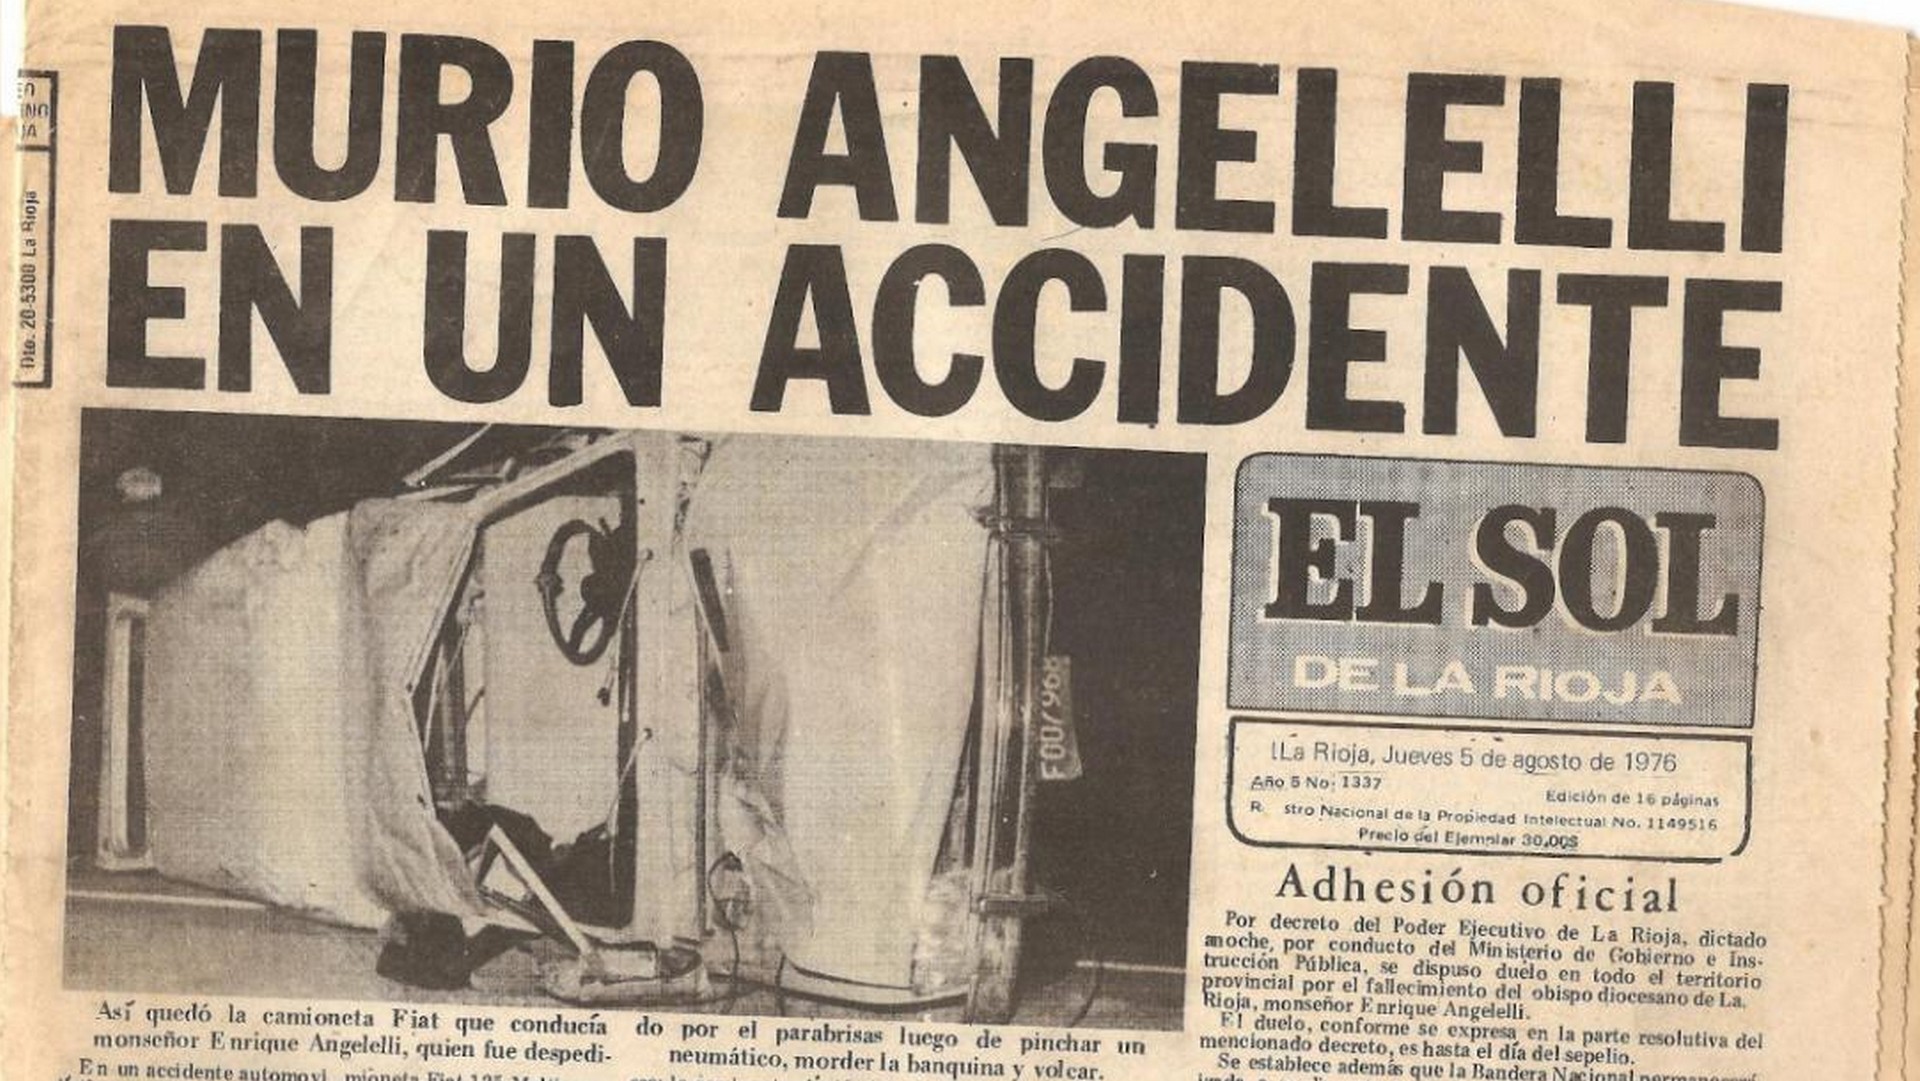 Le journal 'El Sol de La Rioja' du 5 août 1976 annonçant la mort dans un accident de l'évêque Mgr Enrique Angelelli 